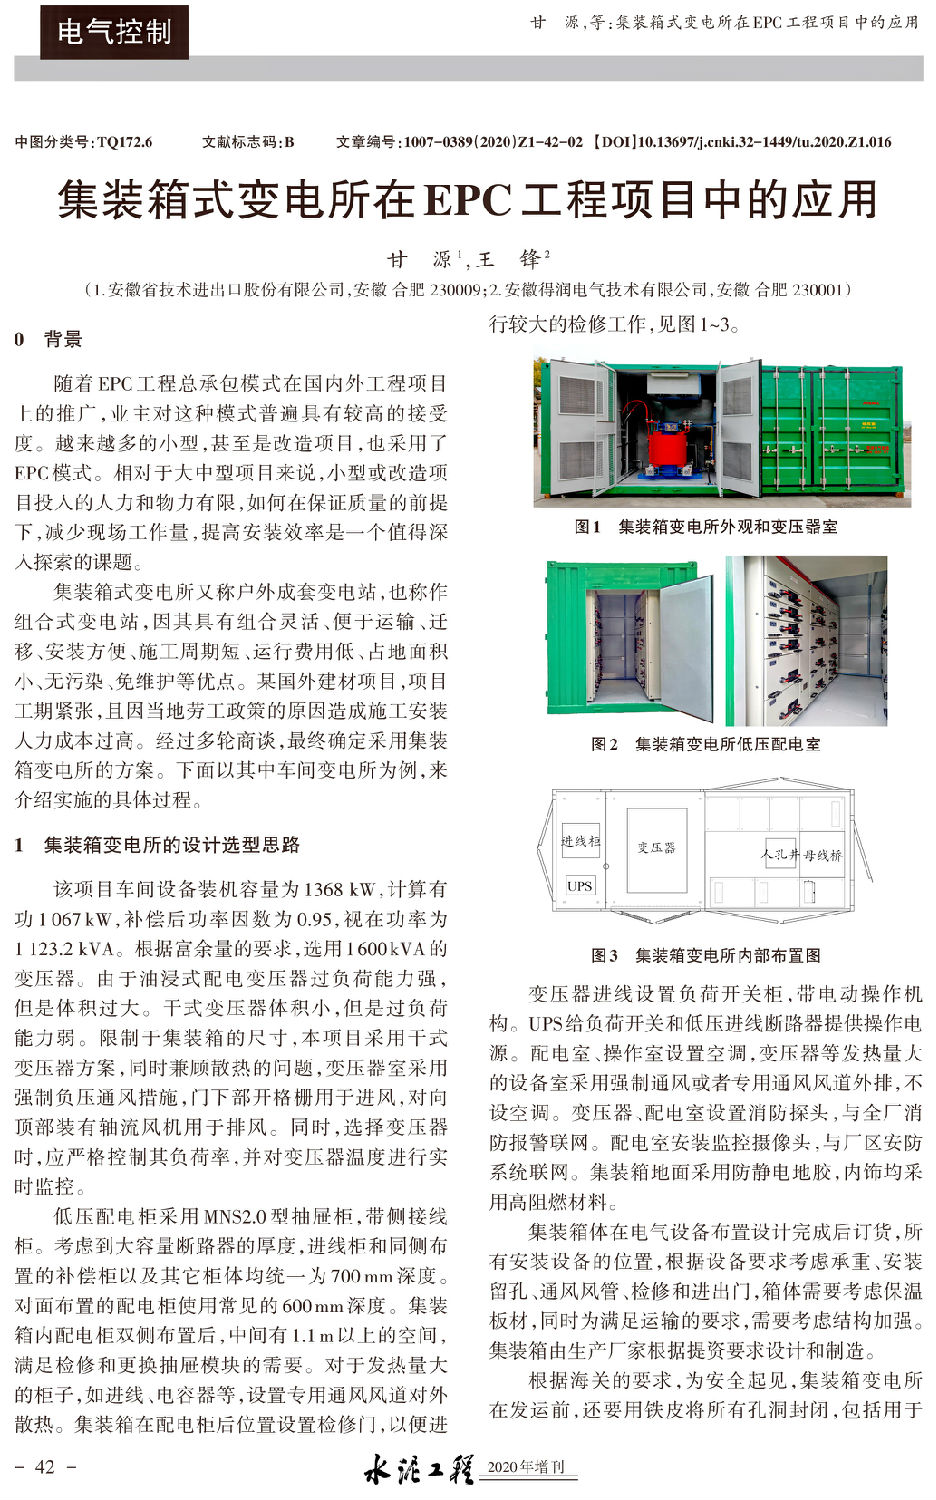 集裝箱式變電所在EPC工程項目中的應用-1.jpg